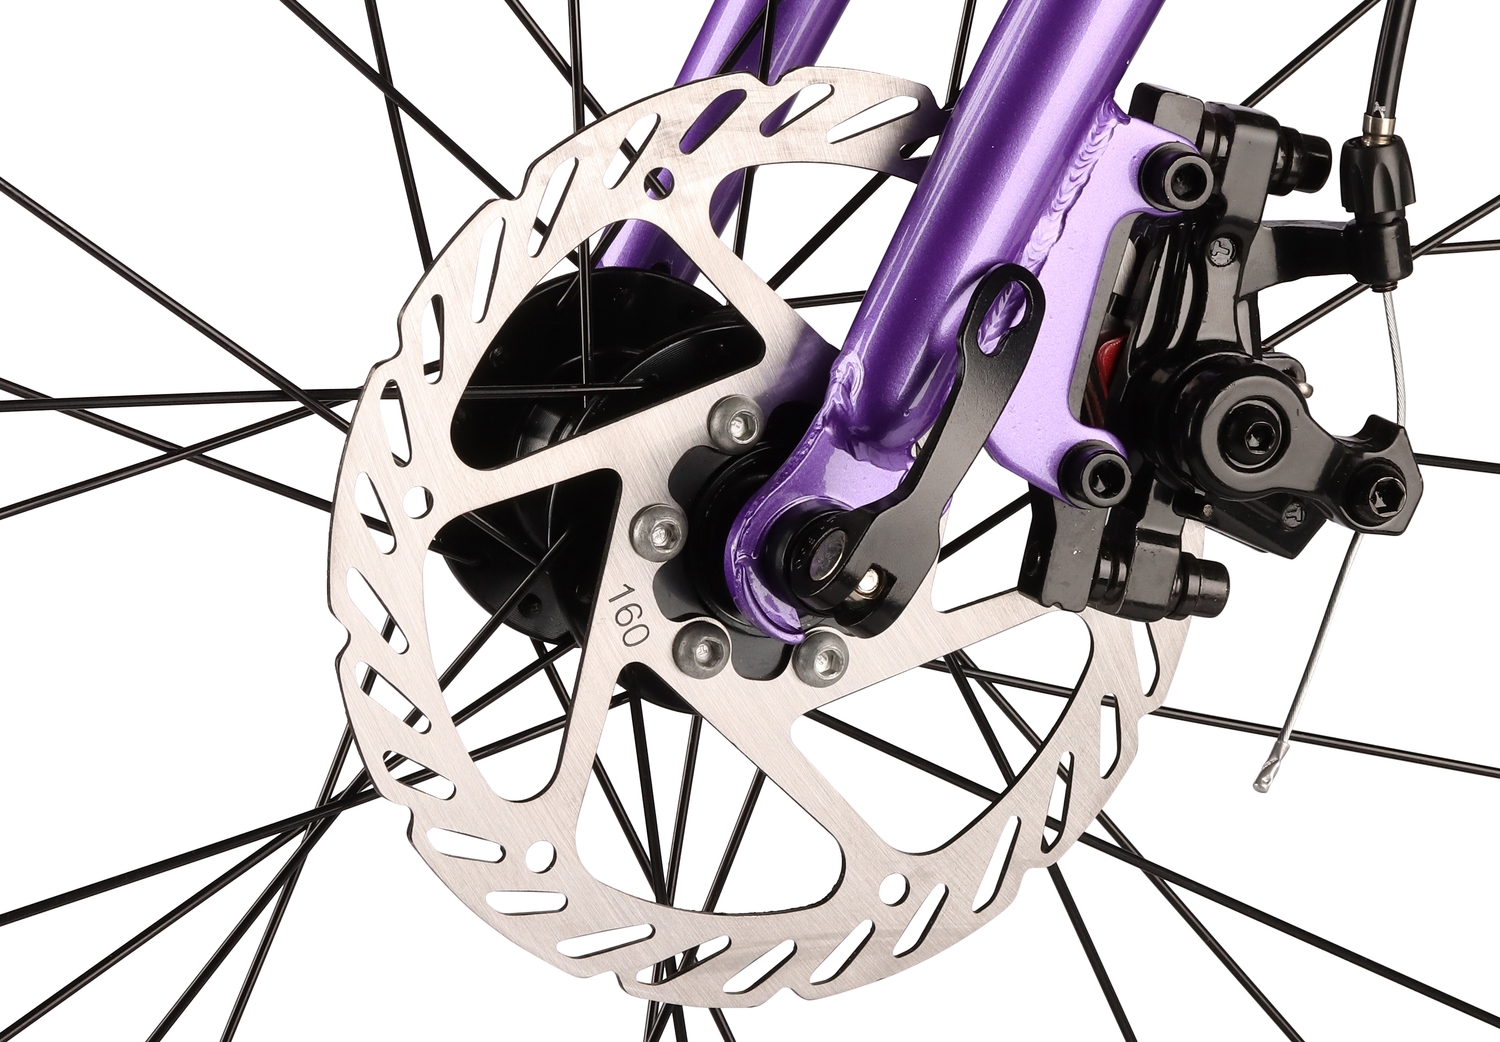 Подростковый велосипед Shulz Chloe 26 Race, год 2023, цвет Фиолетовый, ростовка 13